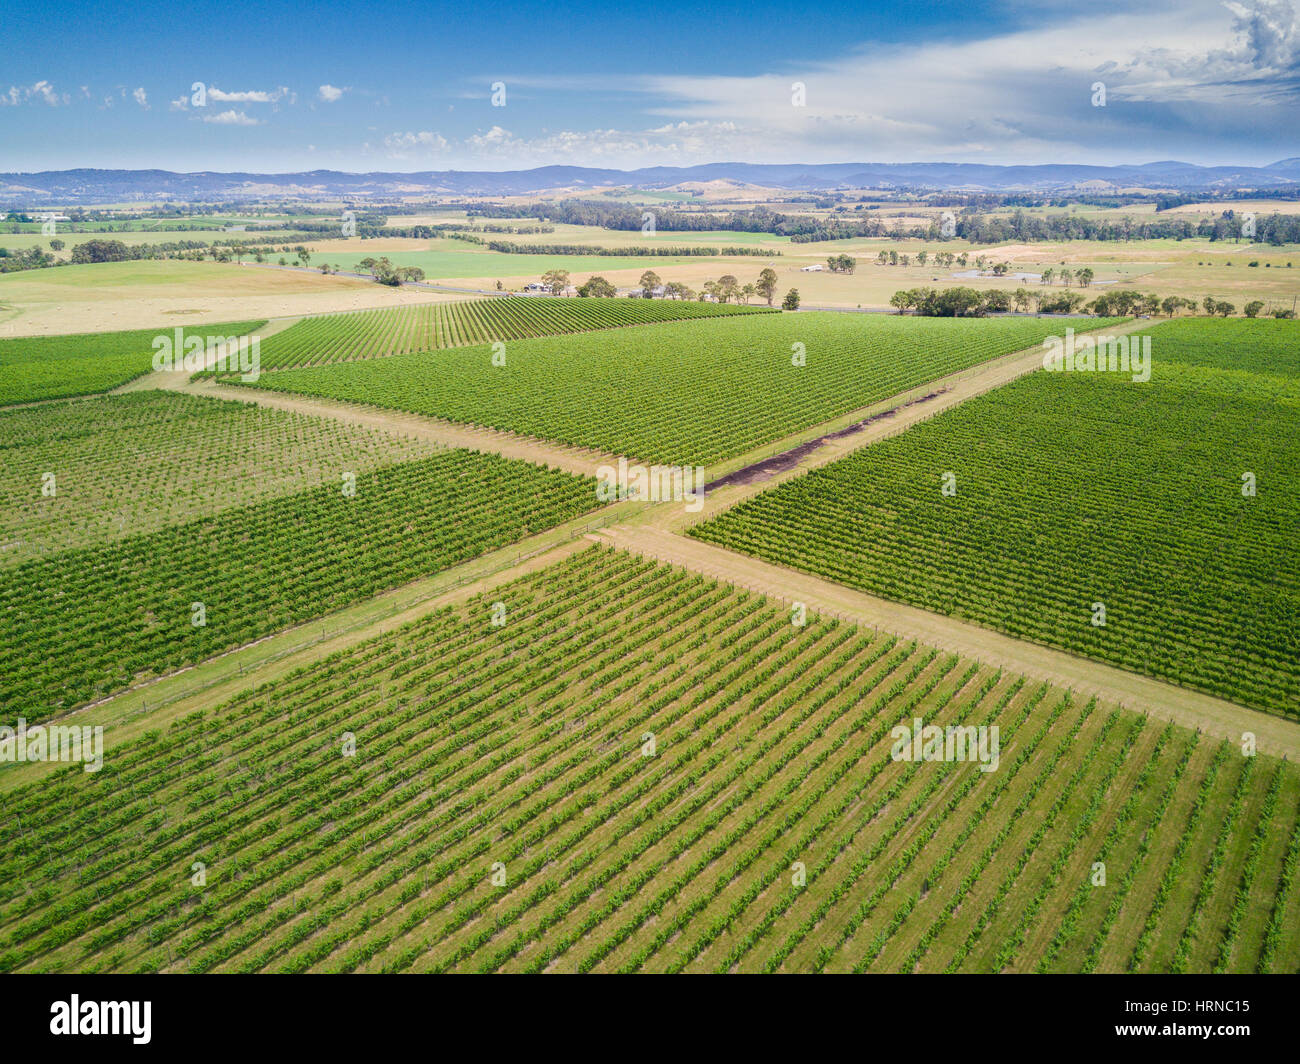 Vista aérea directamente encima de un viñedo en el valle de Yarra, Melbourne, Australia. Una famosa región vinícola que produce vino para todo el mundo. Foto de stock